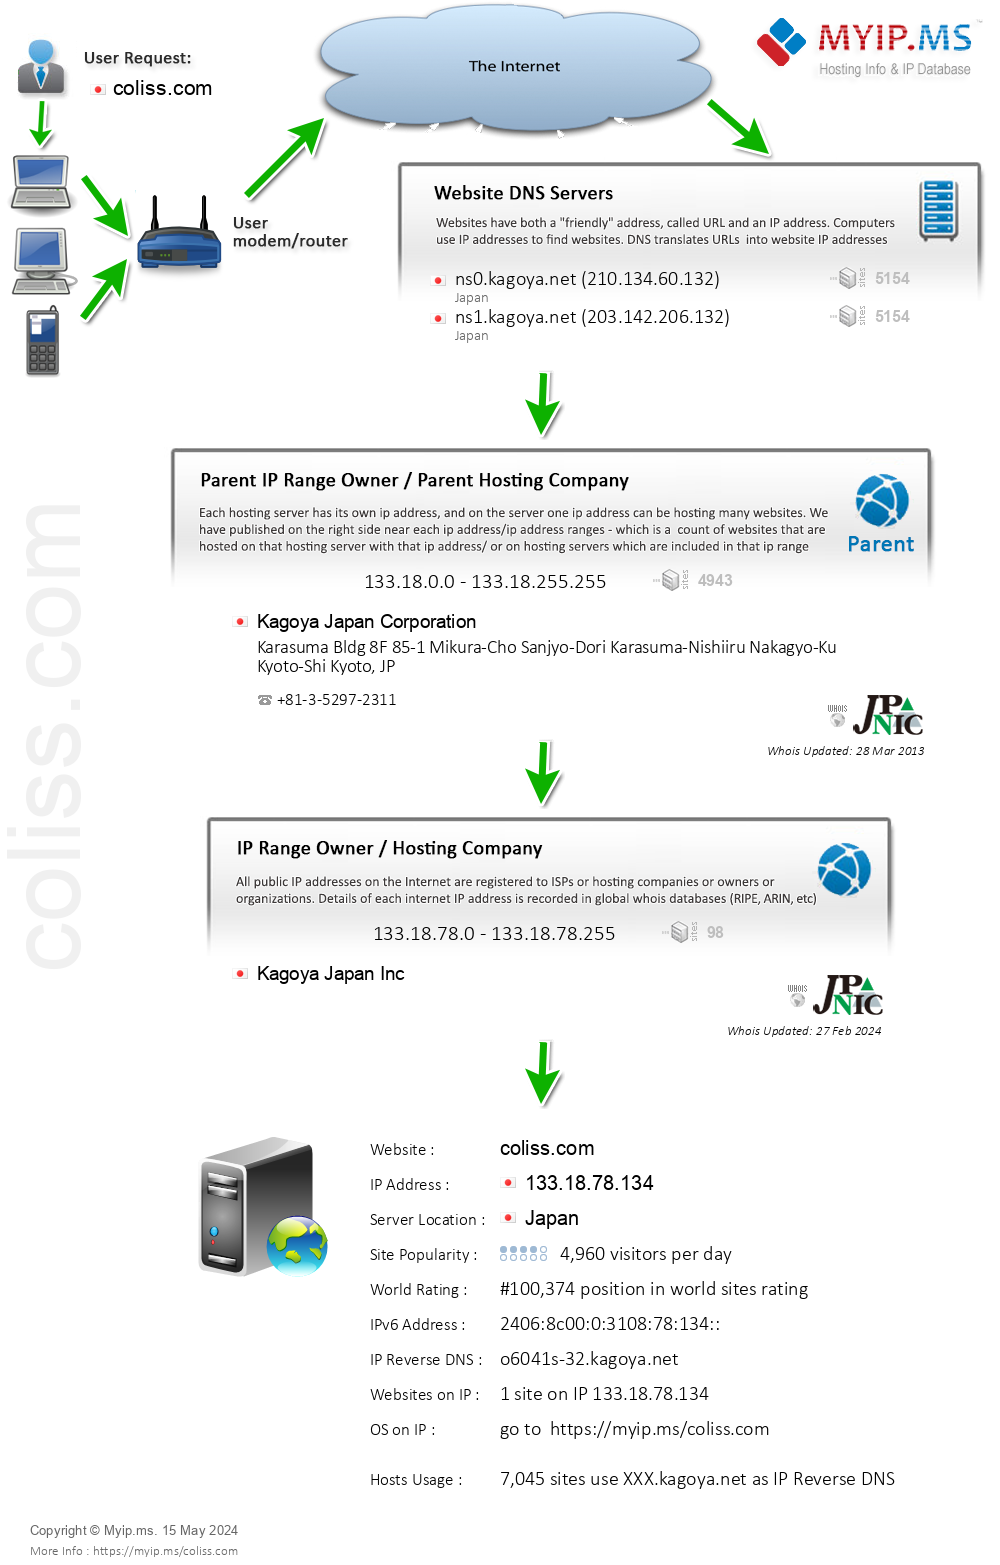 Coliss.com - Website Hosting Visual IP Diagram